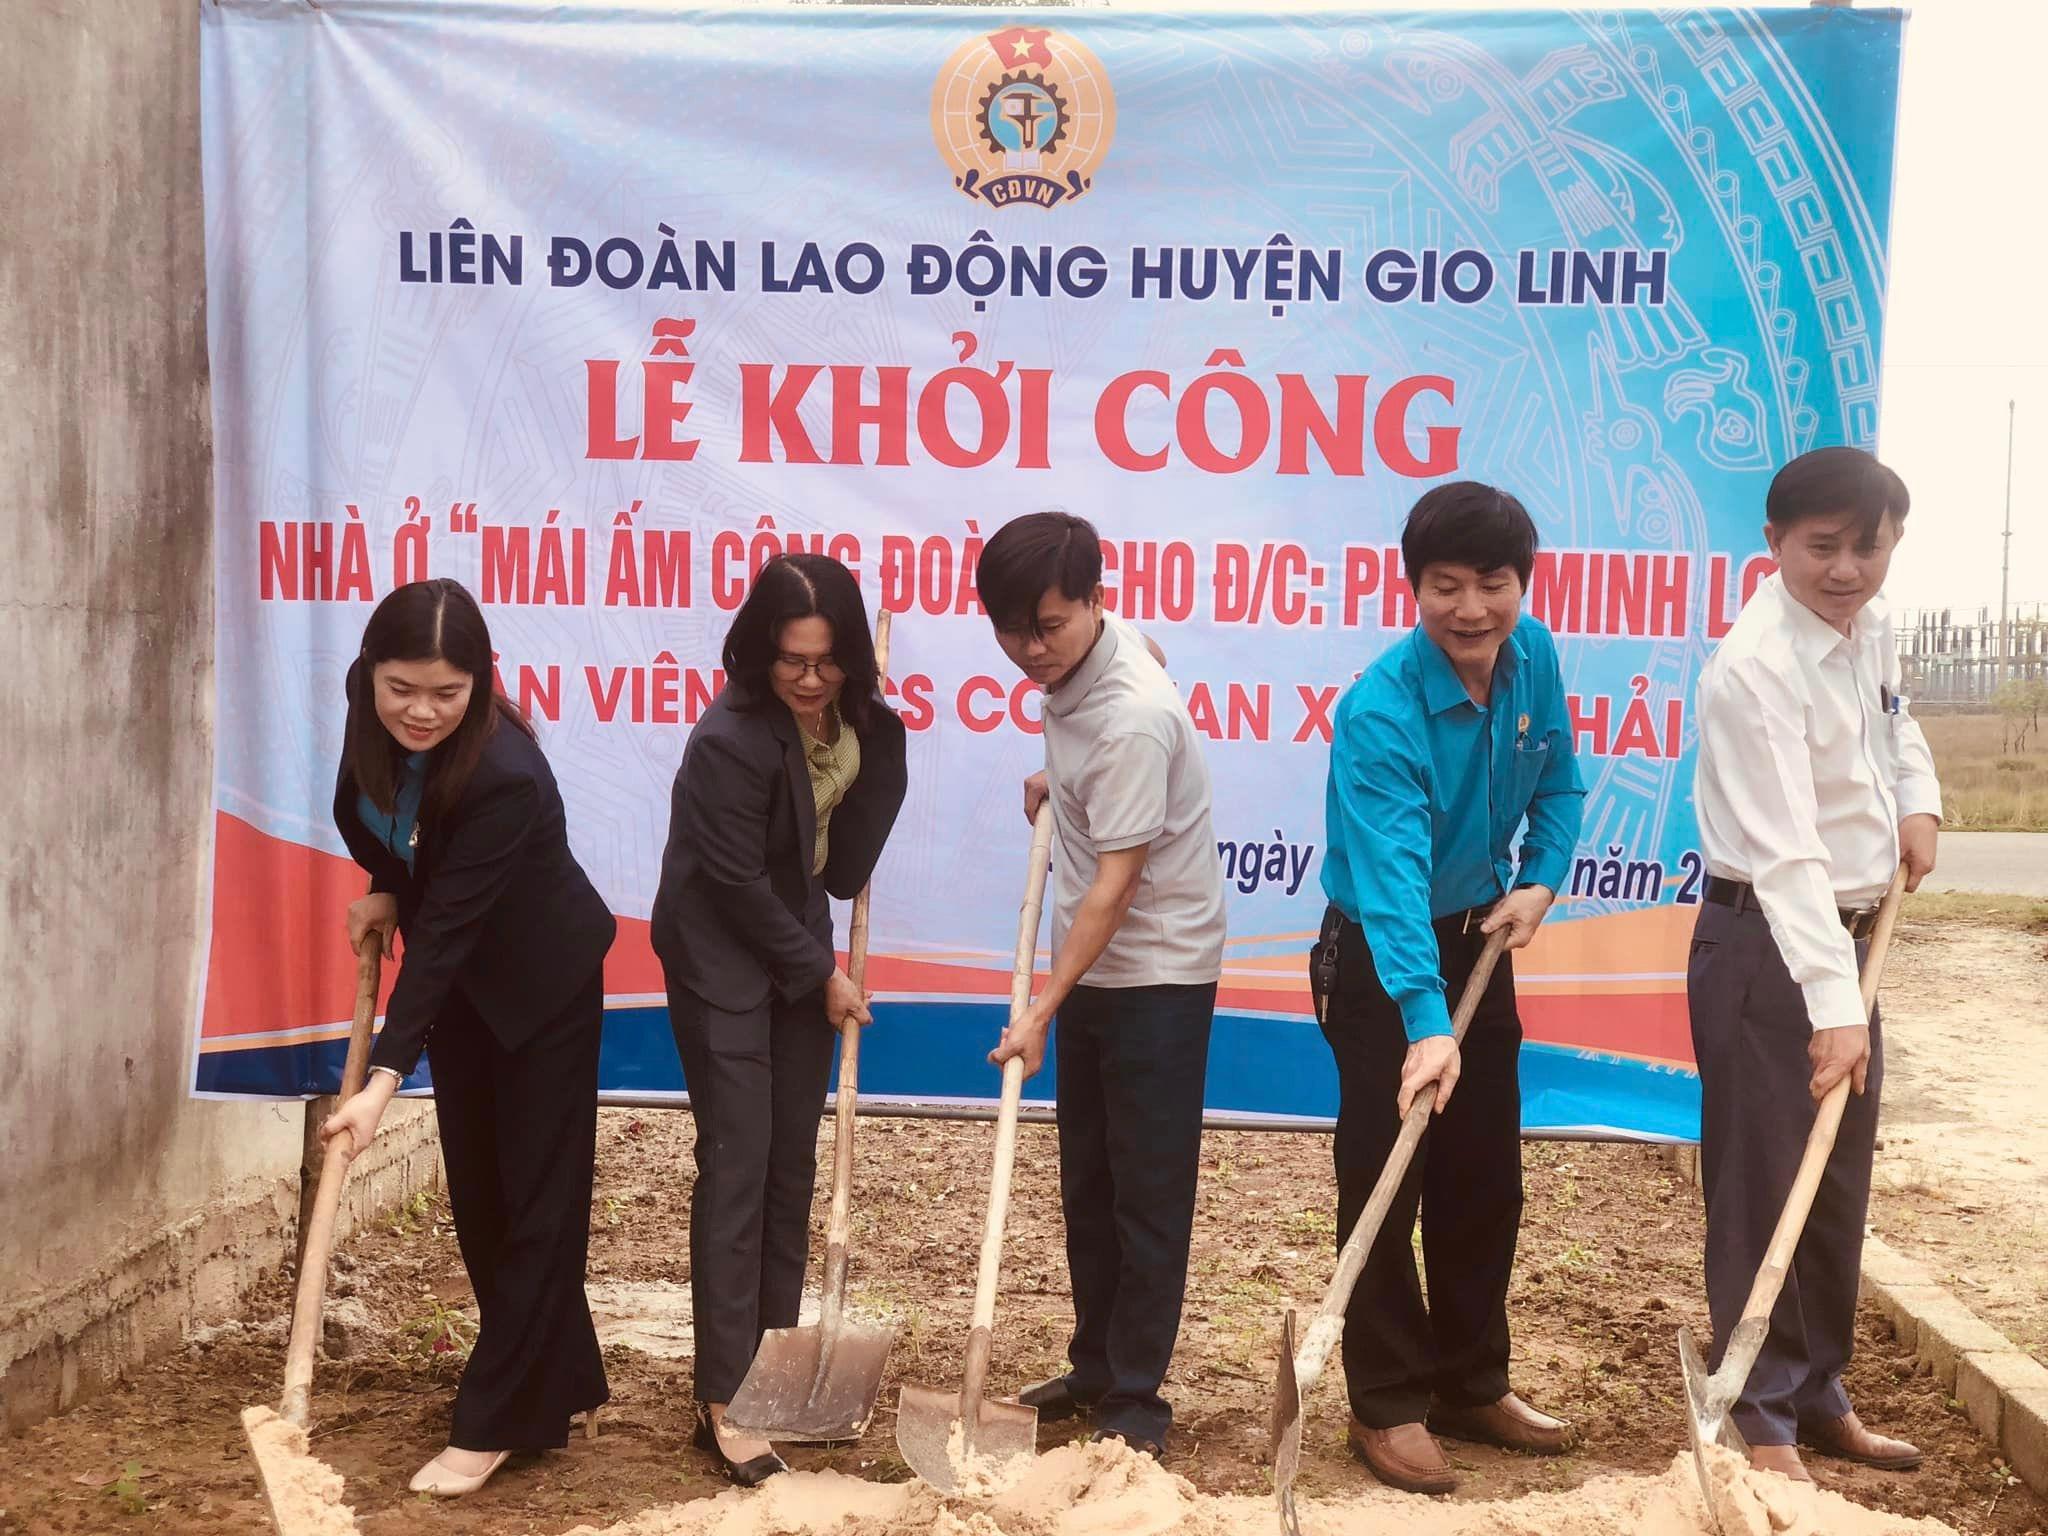 Liên đoàn Lao động huyện Gio Linh khởi công xây dựng “Mái ấm công đoàn” cho đoàn viên khó khăn